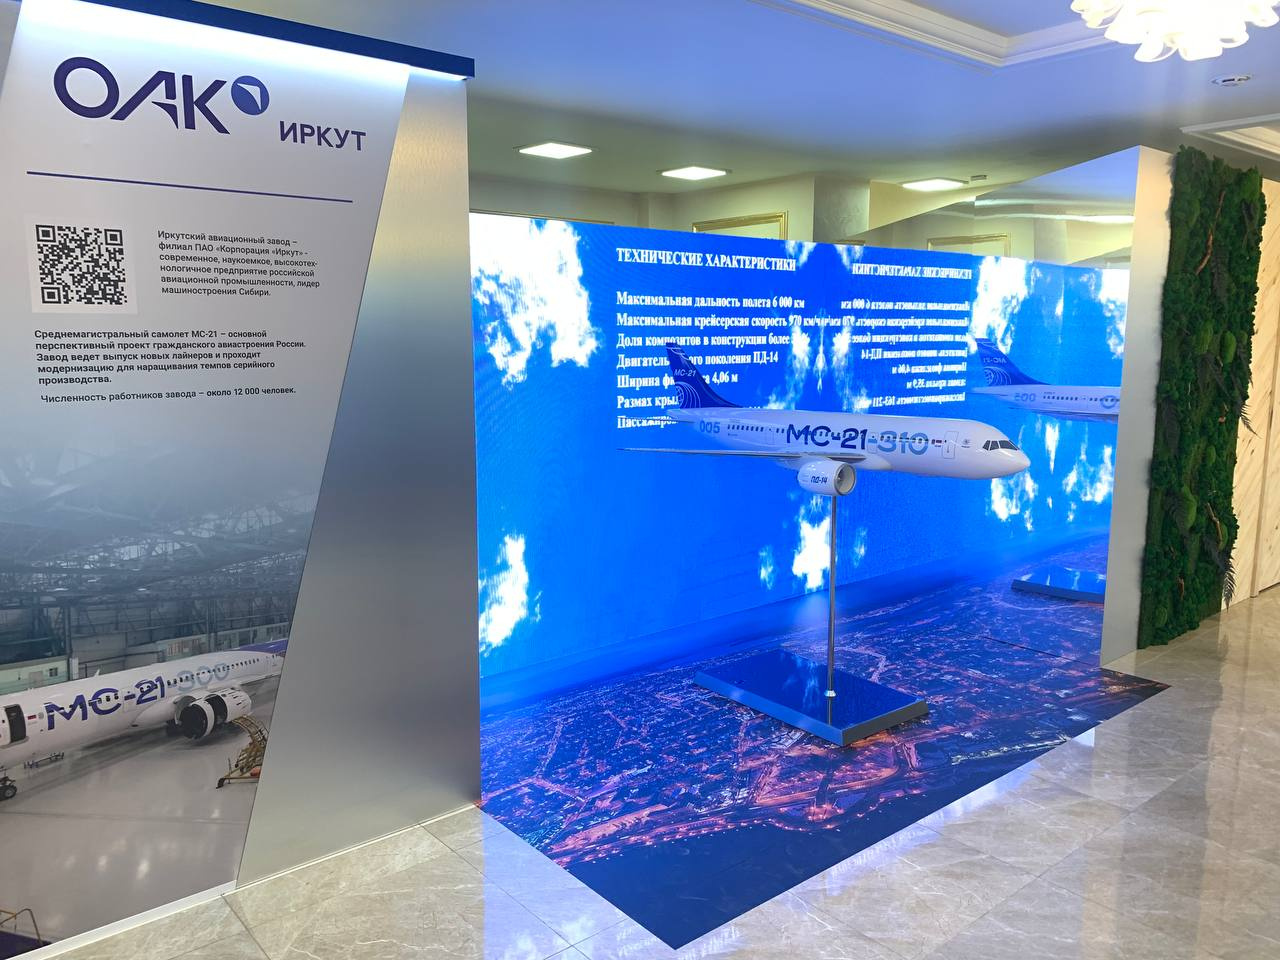 Макет самолета МС-21, который собирают на Иркутском авиазаводе, на фоне экрана с облаками и информацией о производстве корпорации «Иркут»